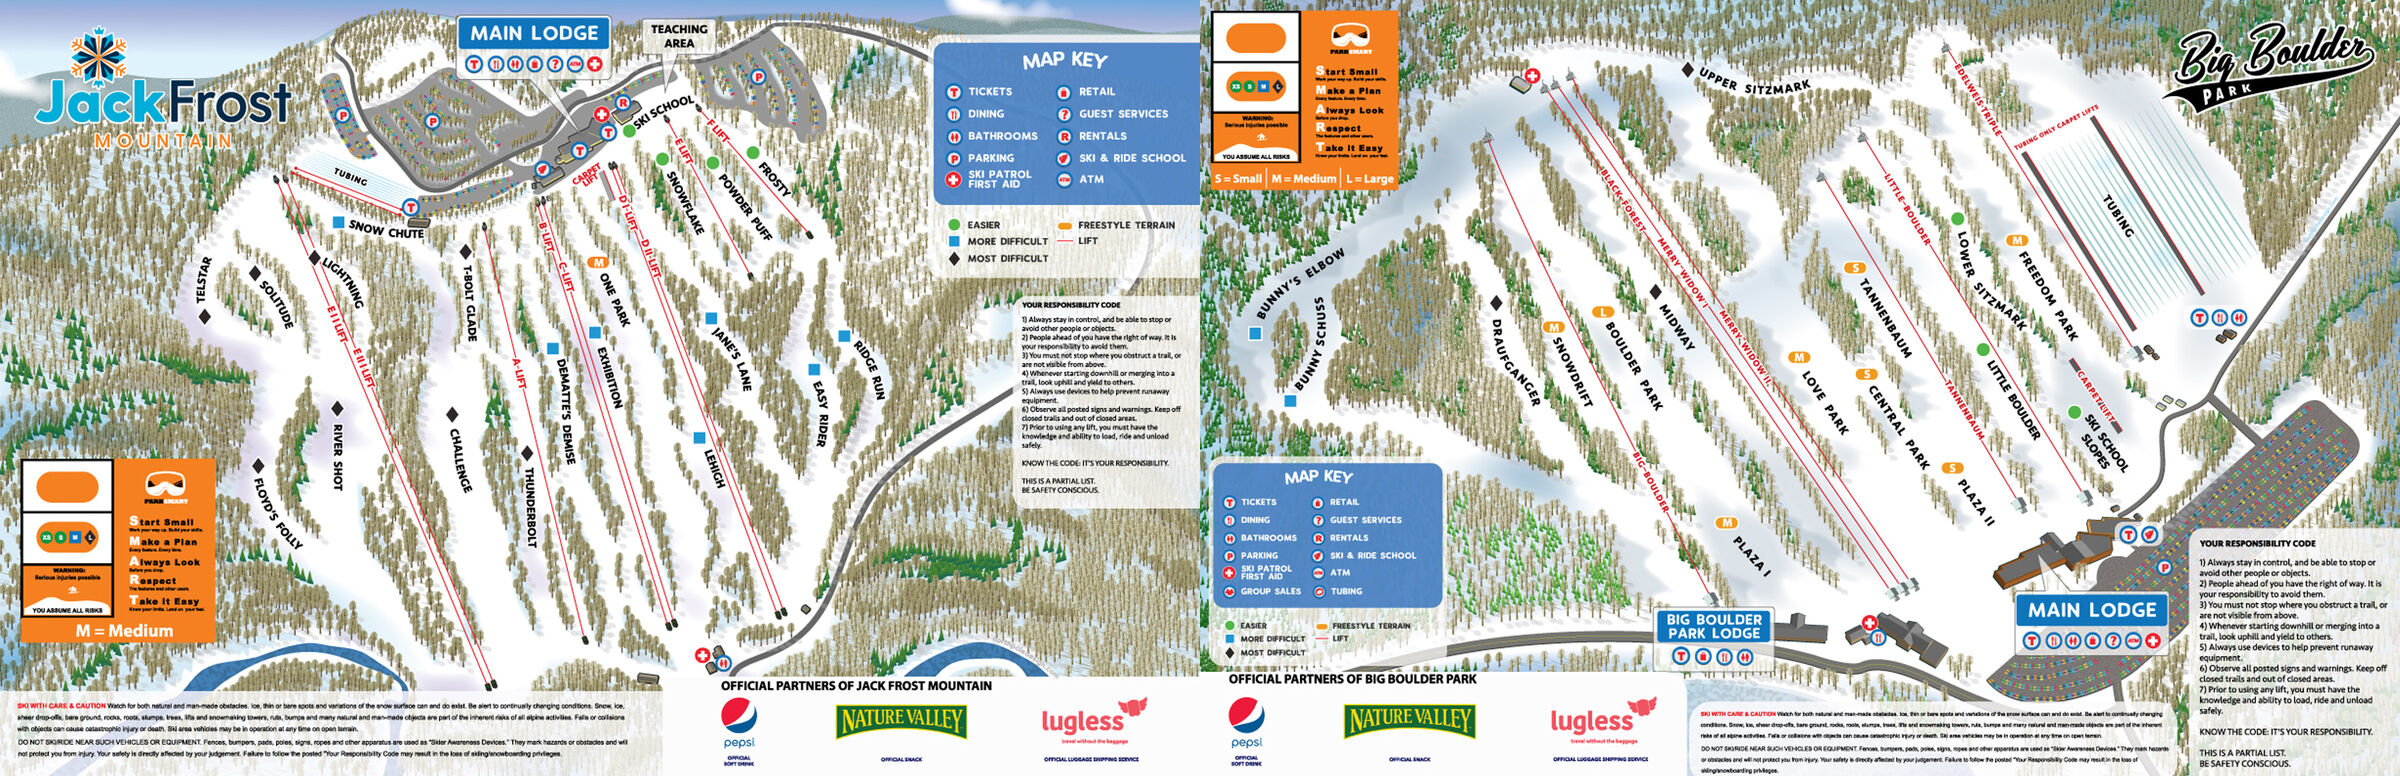 Jack Frost Big Boulder Trail Map